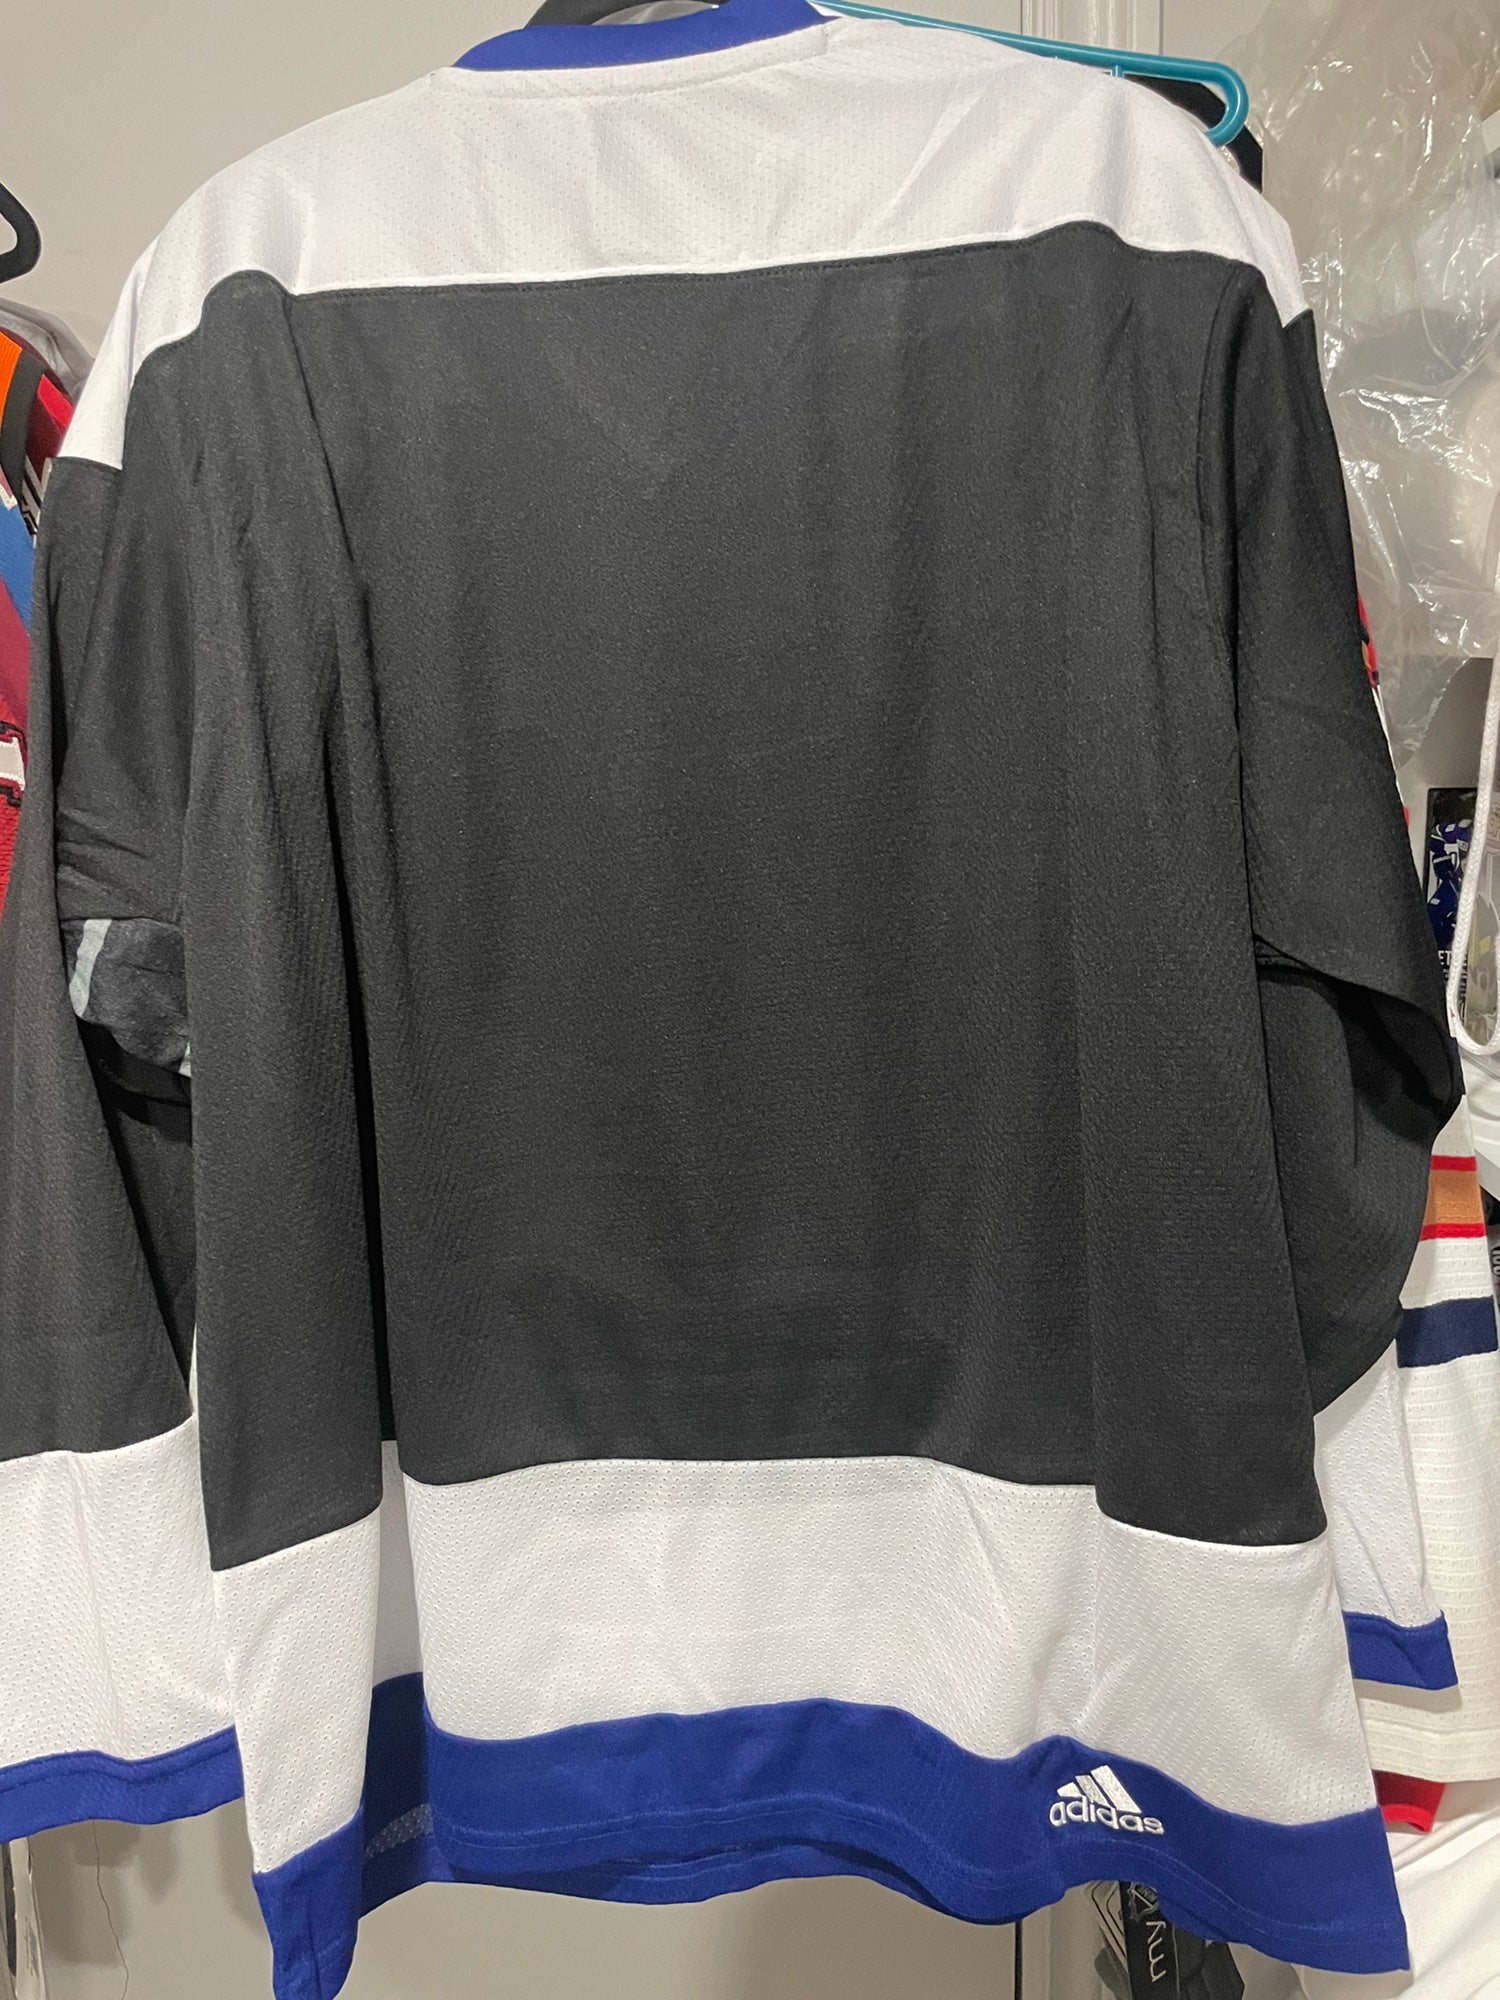 Tampa Bay Lightning adidas 2022 NHL Stadium Series Amplifier shirt